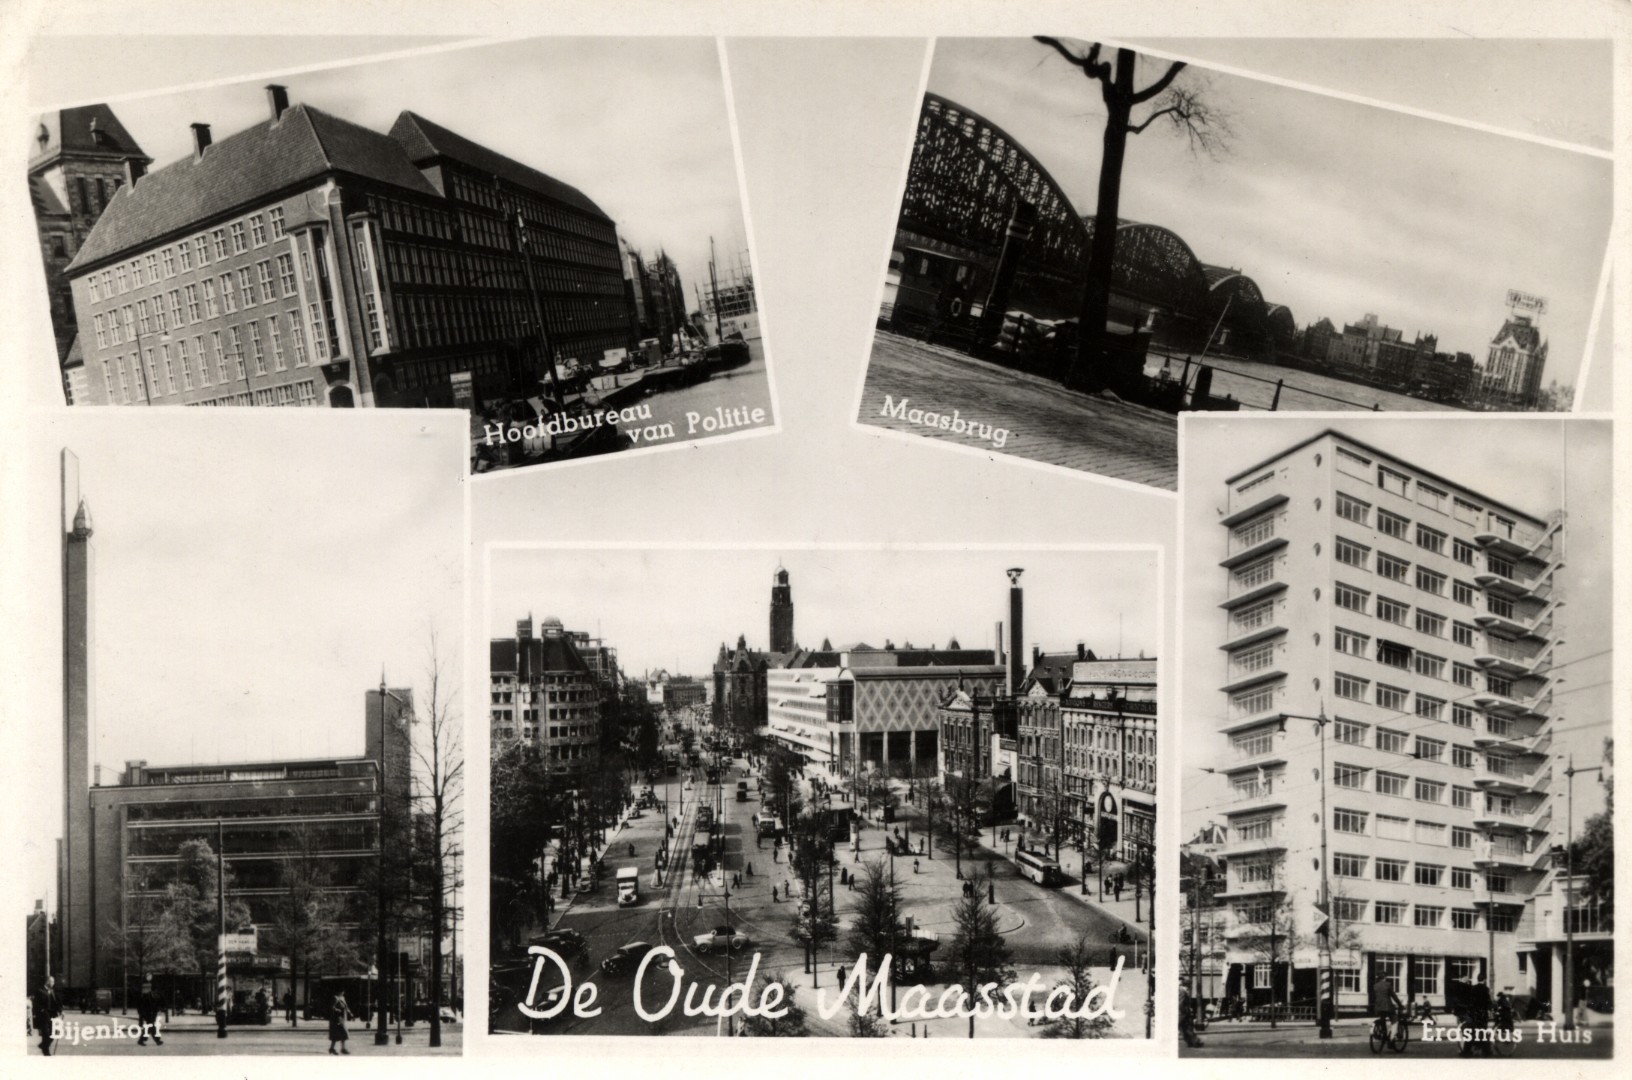 Rotterdam, ca. 1960: De Oude Maasstad